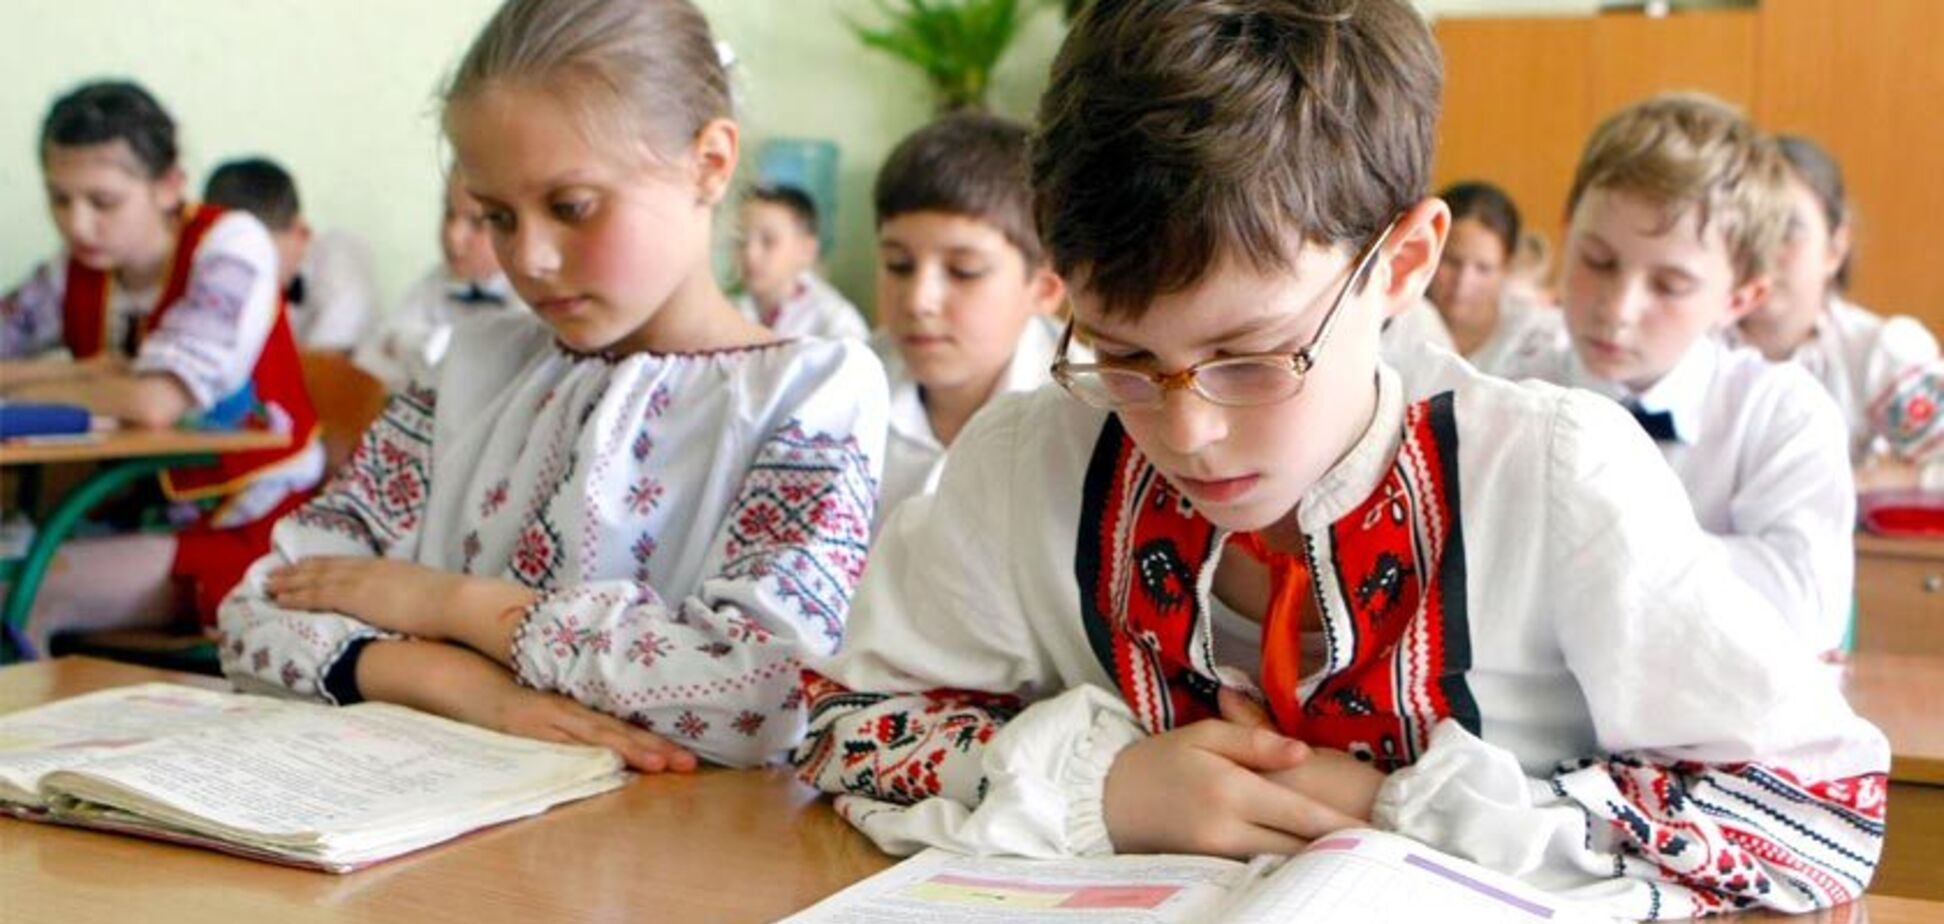 Свобода для учеников и деньги для педагогов: как в Украине хотят изменить среднее образование